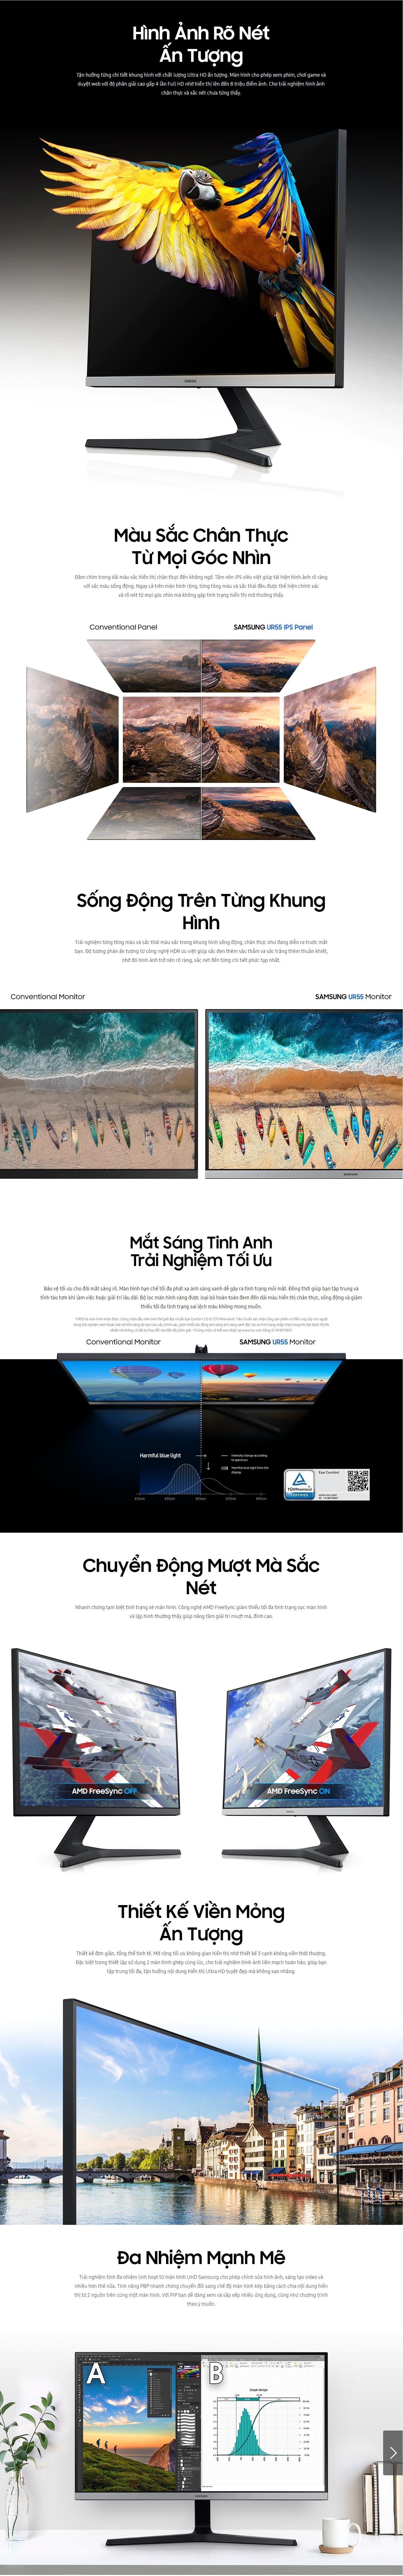 Màn hình Samsung LU28R55 (28 inch / UHD /LED / IPS / DS+HDMI /60Hz)